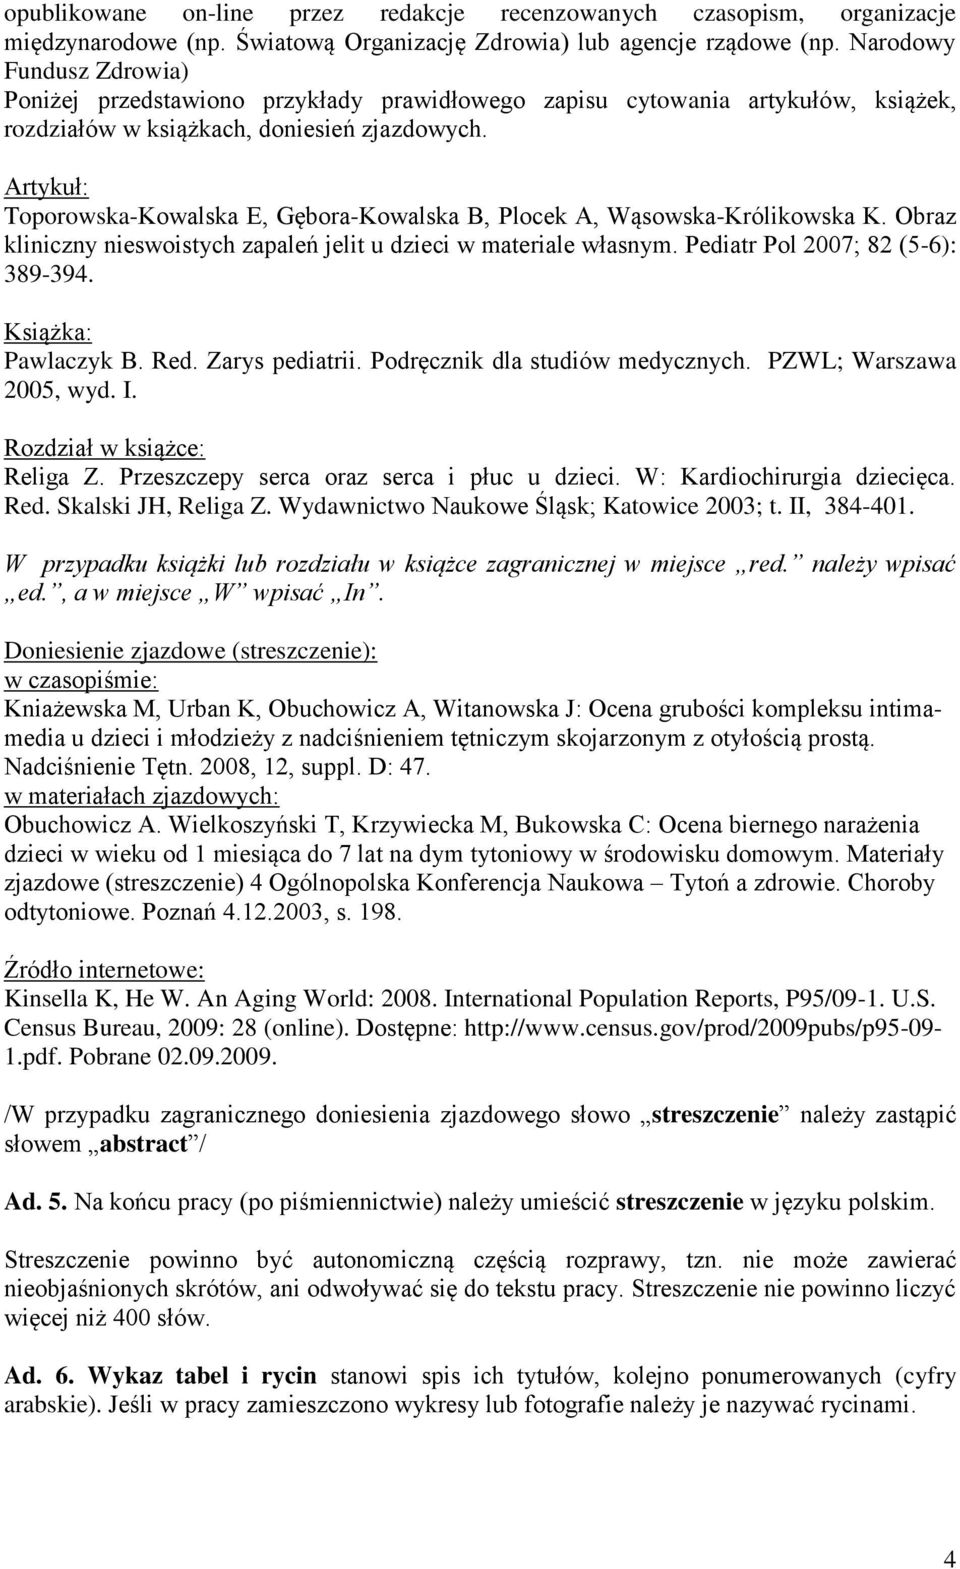 Artykuł: Toporowska-Kowalska E, Gębora-Kowalska B, Plocek A, Wąsowska-Królikowska K. Obraz kliniczny nieswoistych zapaleń jelit u dzieci w materiale własnym. Pediatr Pol 2007; 82 (5-6): 389-394.